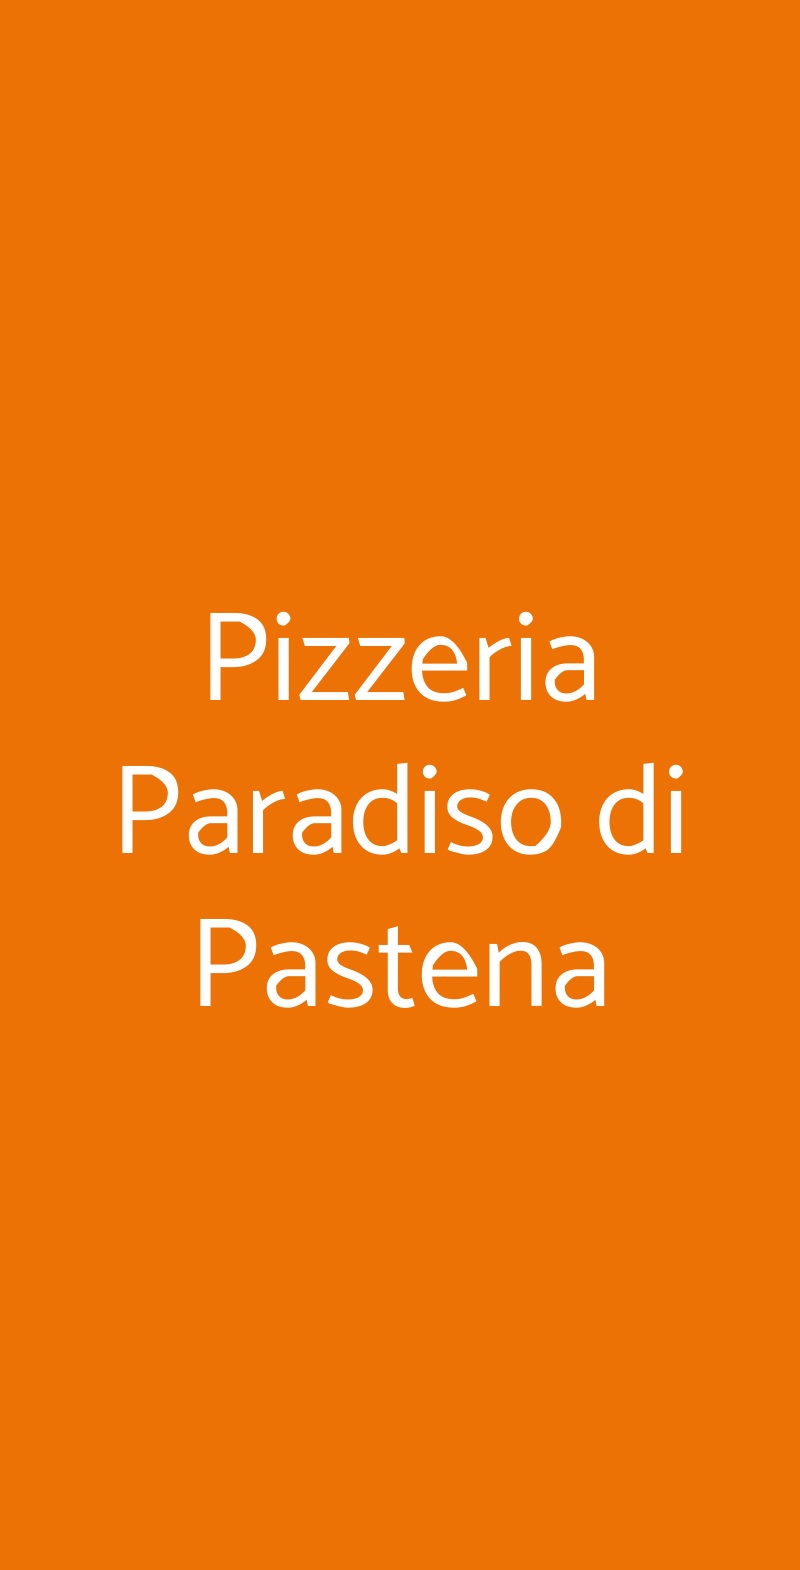 Pizzeria Paradiso di Pastena Salerno menù 1 pagina